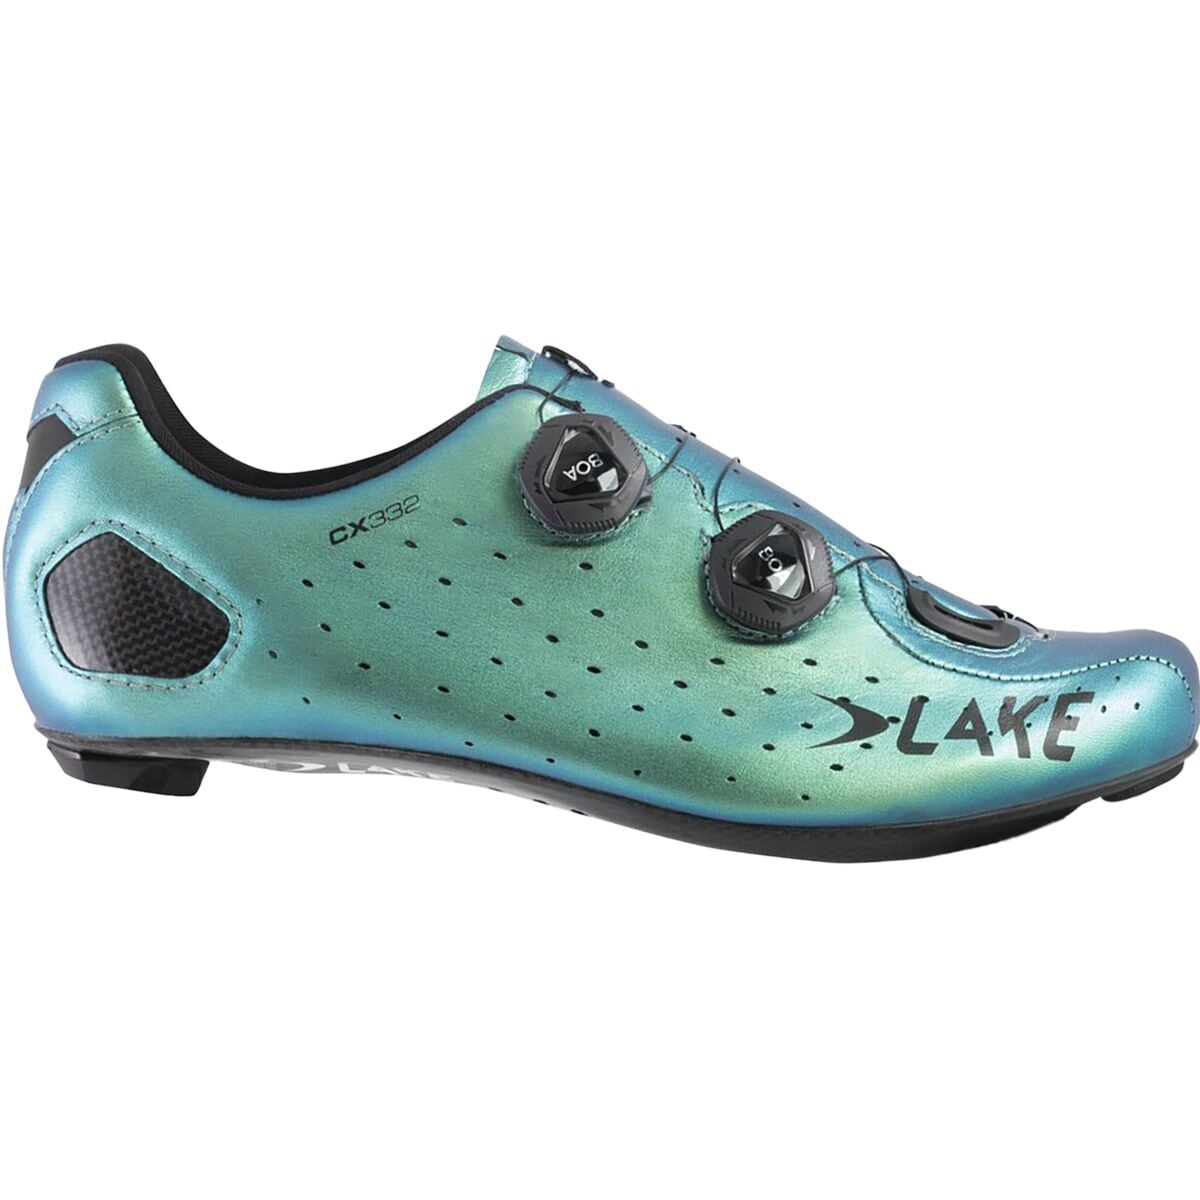 Lake CX332 Wide Cycling Shoe - Men's